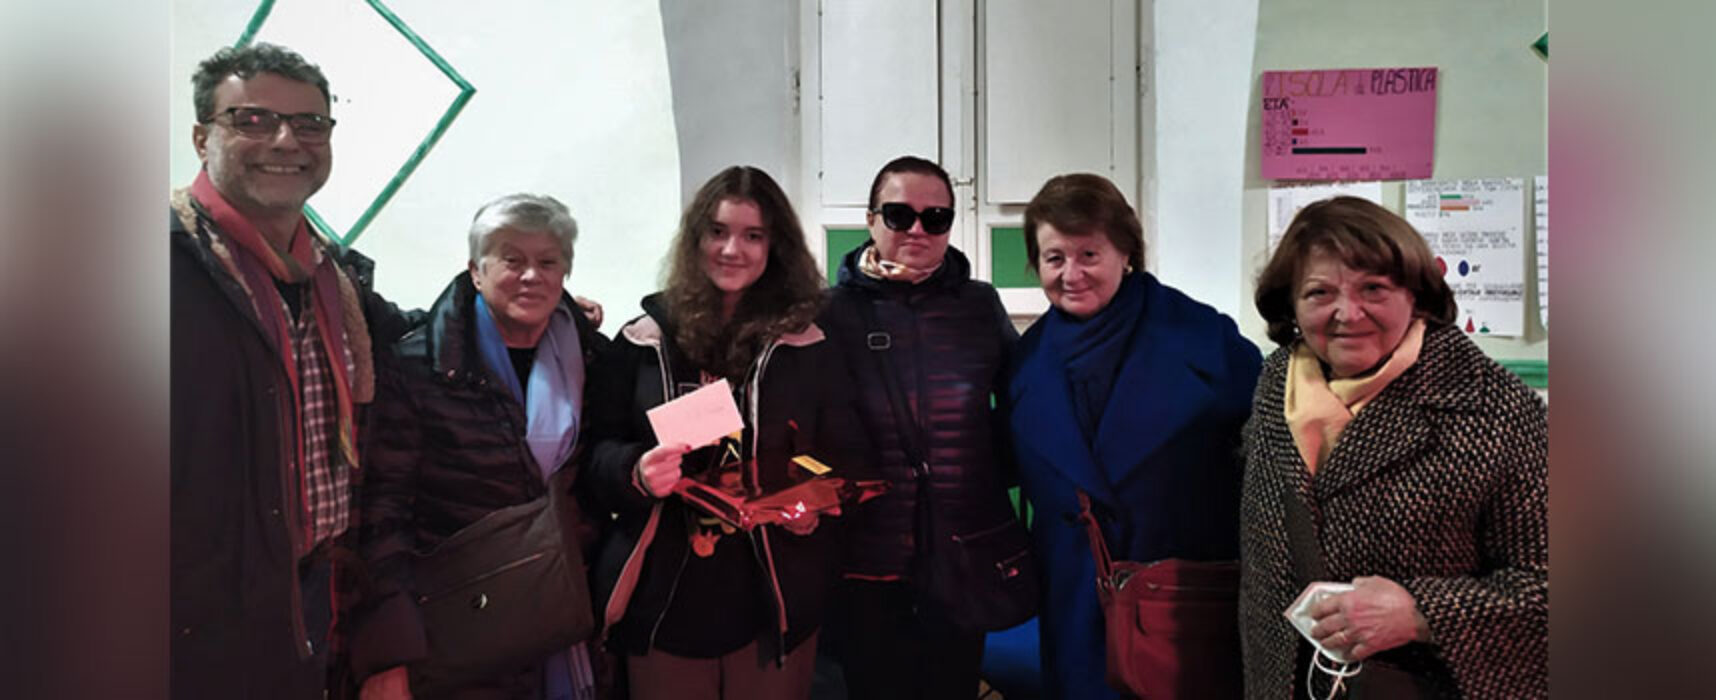 Progetto “Apri le porte agli Ucraini”, Adisco premia studentessa fuggita alla guerra